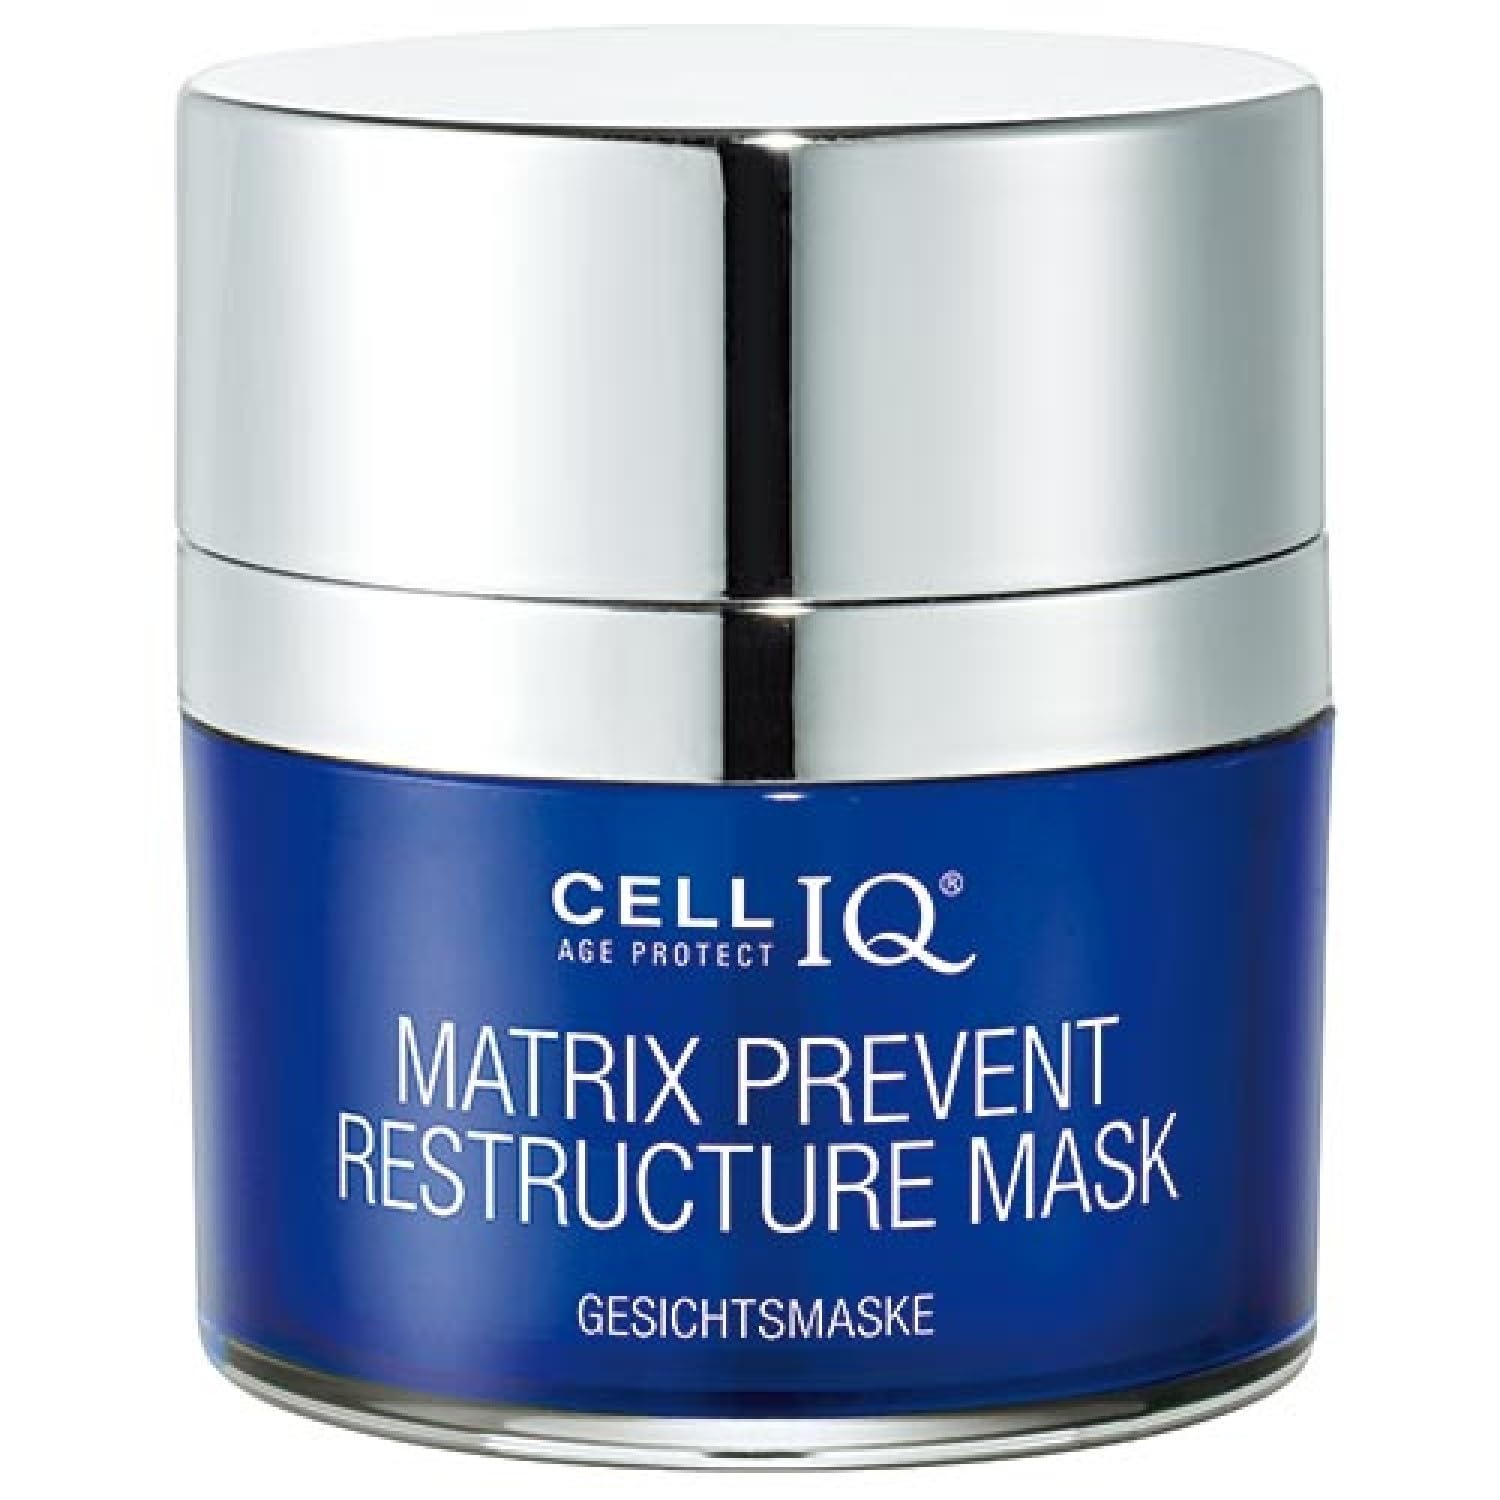 Binella Cell IQ® Age Protect Matrix Prevent Restructure Mask 50 ml